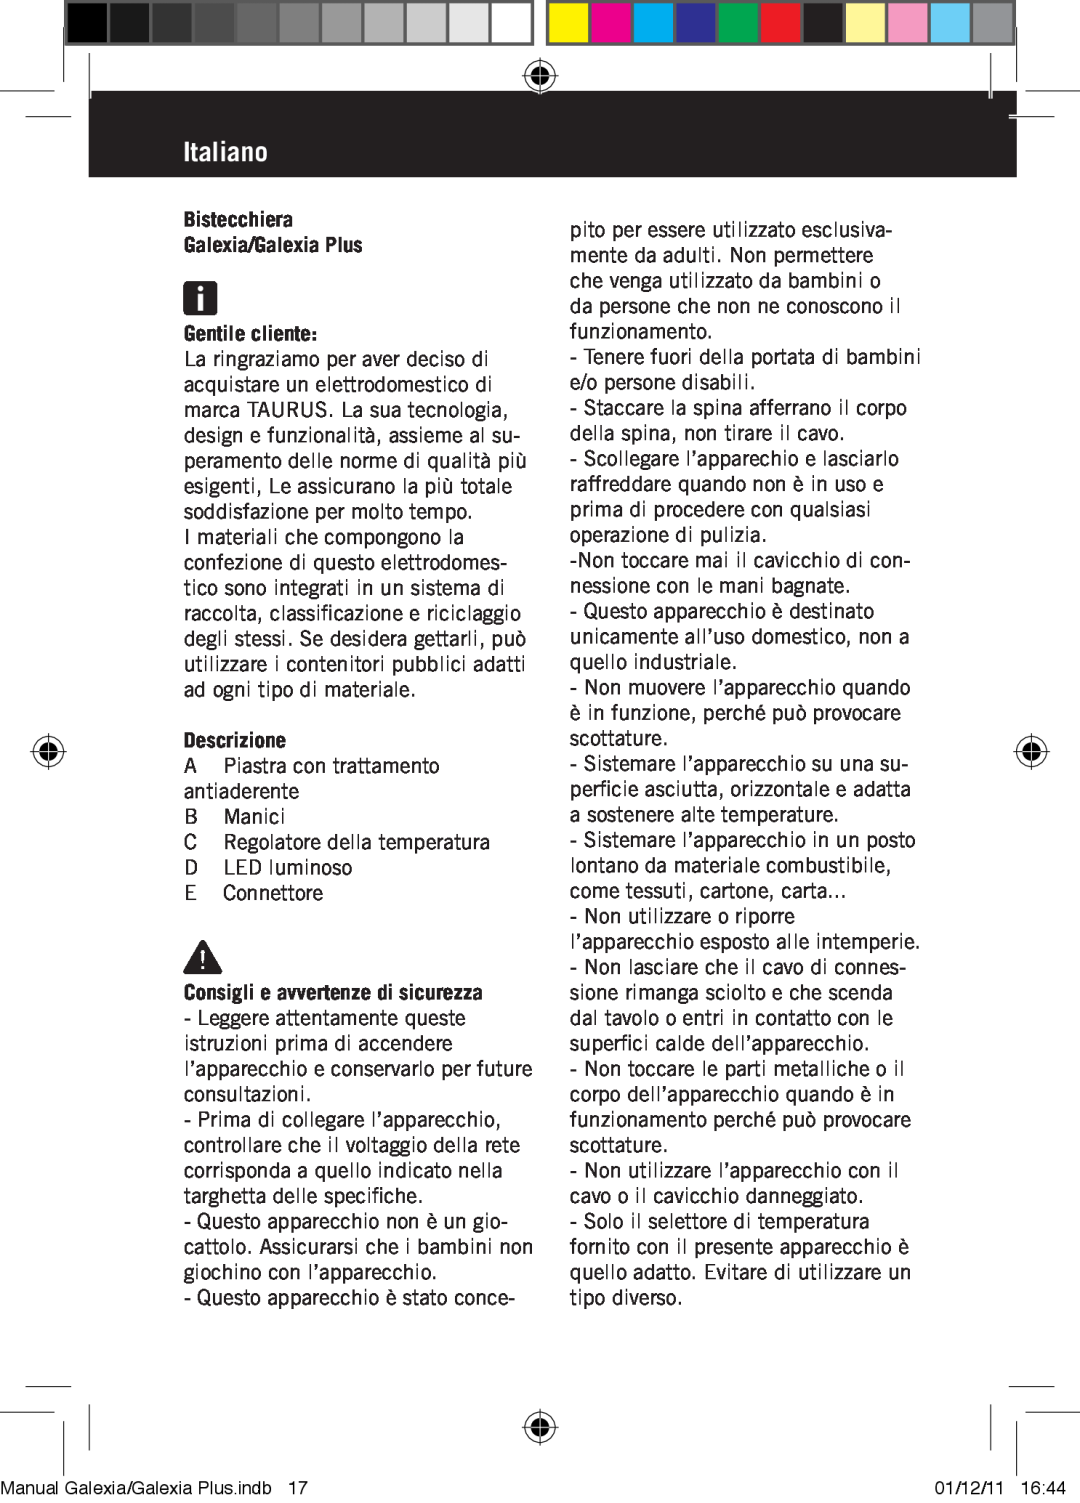 Taurus Group manual Italiano, Bistecchiera Galexia/Galexia Plus Gentile cliente, Descrizione 